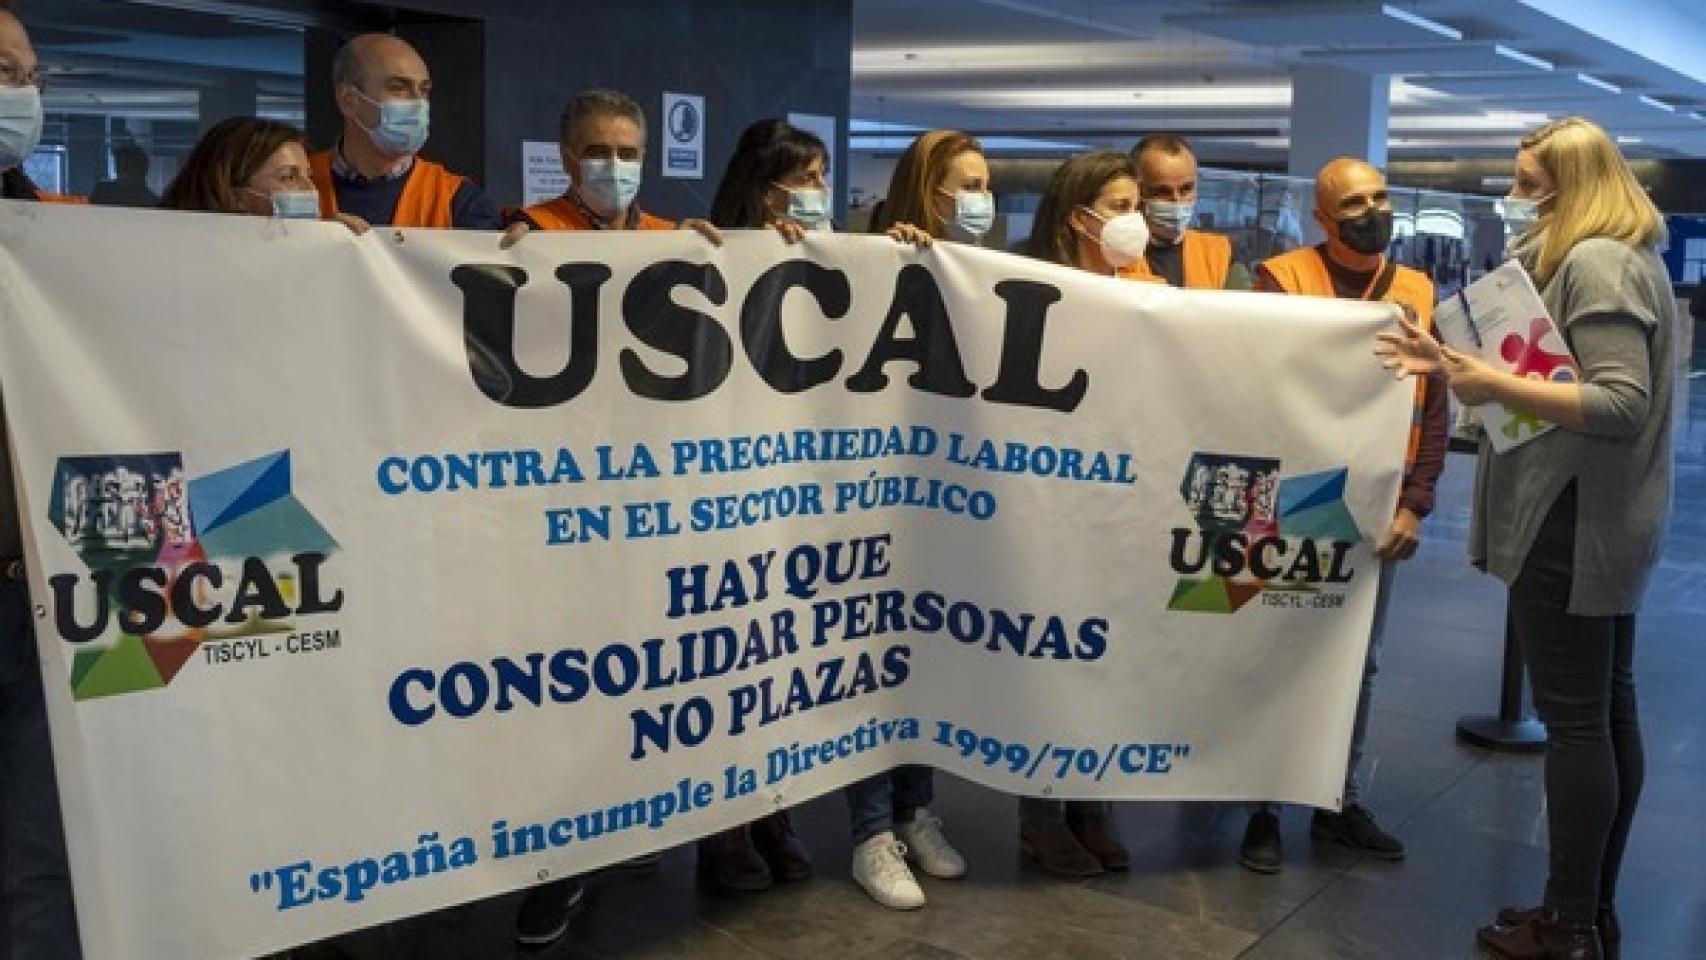 La consejera escucha las reivindicaciones de los miembros del sindicato USCAL